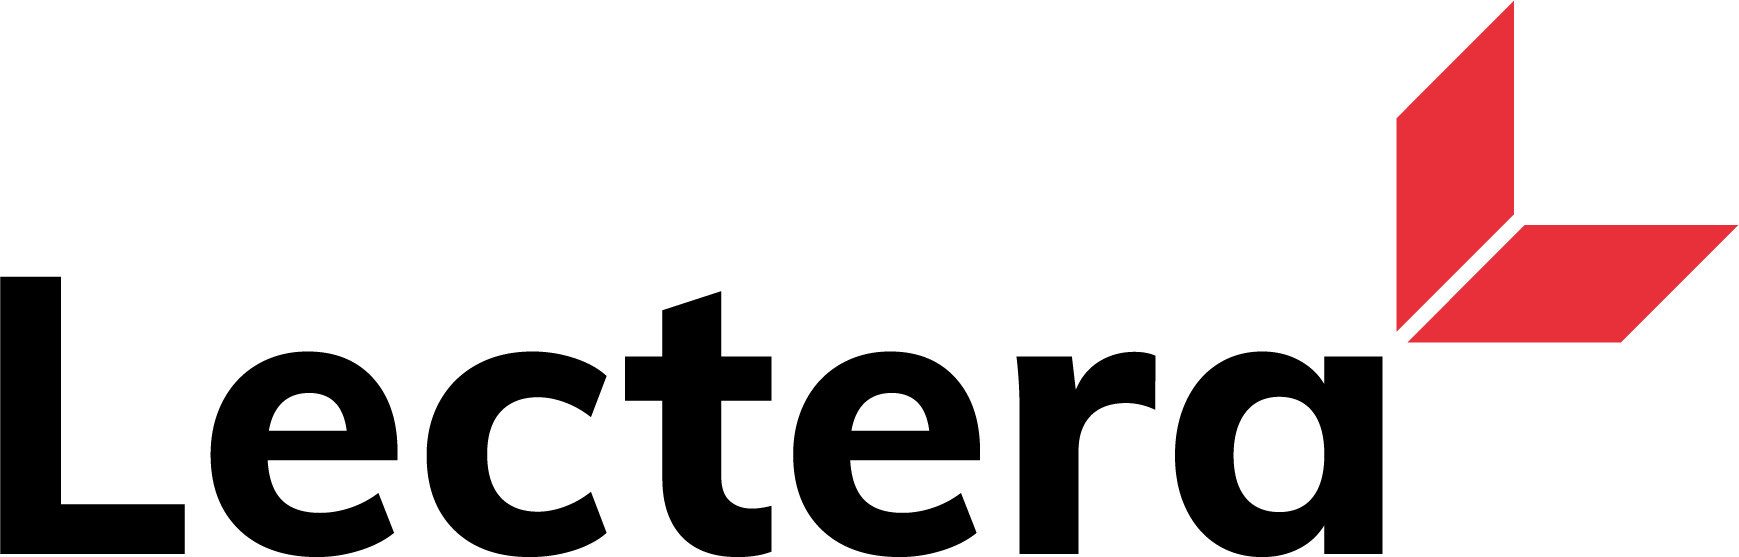 Lectera Логотип(logo)